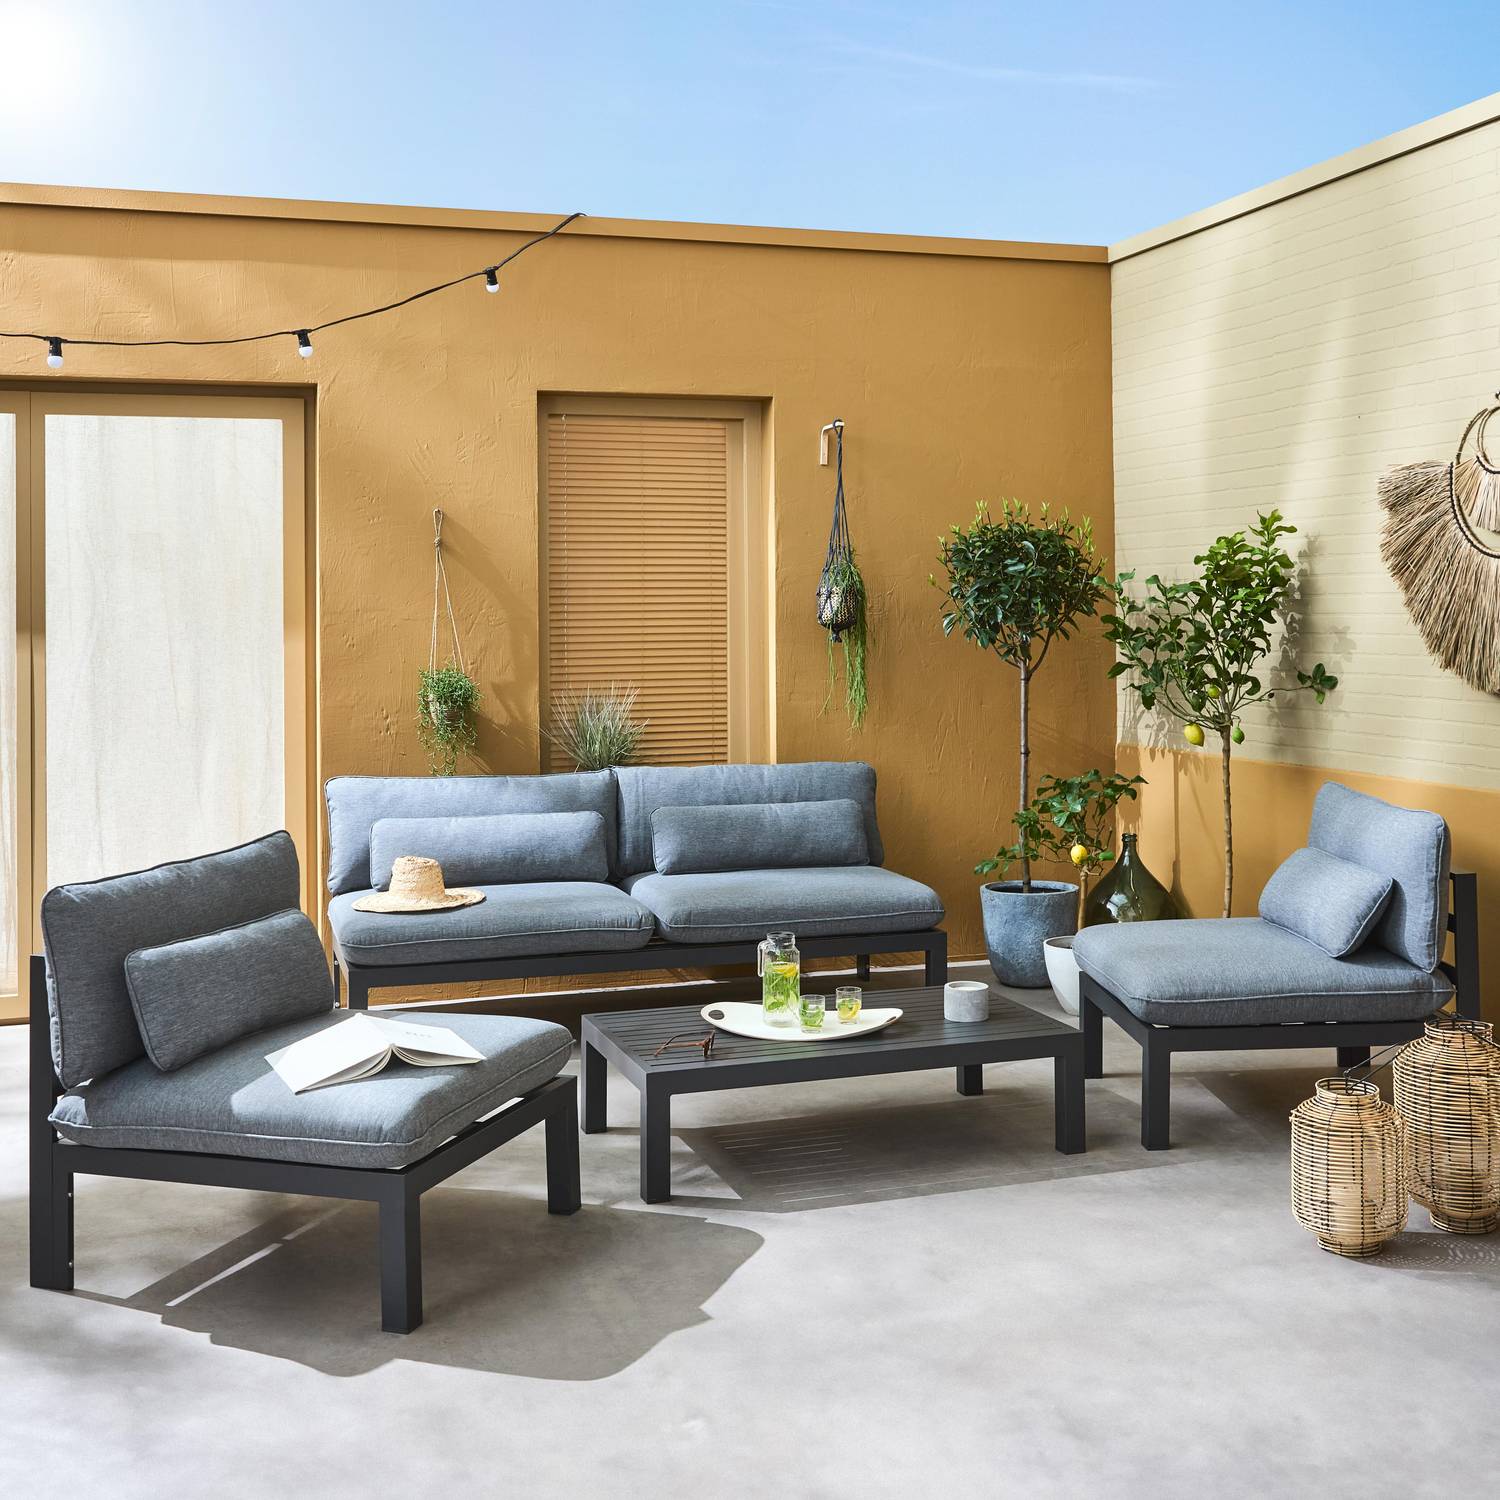 Gartenmöbel Set RIETI für 4 Personen aus Aluminium, tiefe Sitze, Grau Anthrazit Photo1